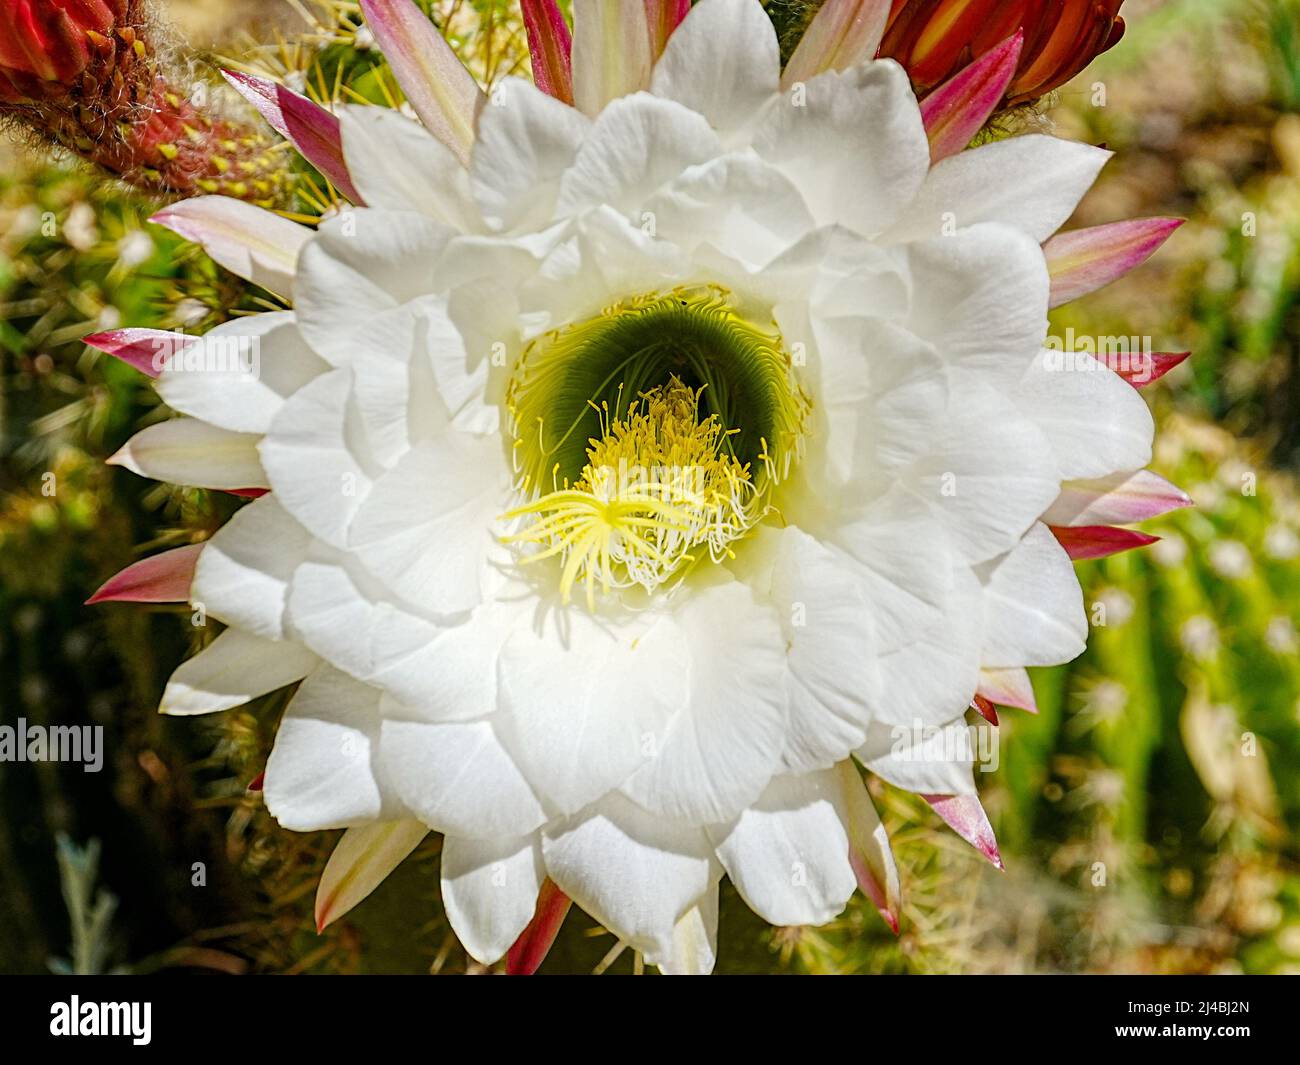 Echinopsis candicans, oder Argentine Giant, hat eine wunderschöne, wabenreiche weiße Blüte, die sie zu einer der beeindruckendsten Kaktusblüten macht Stockfoto